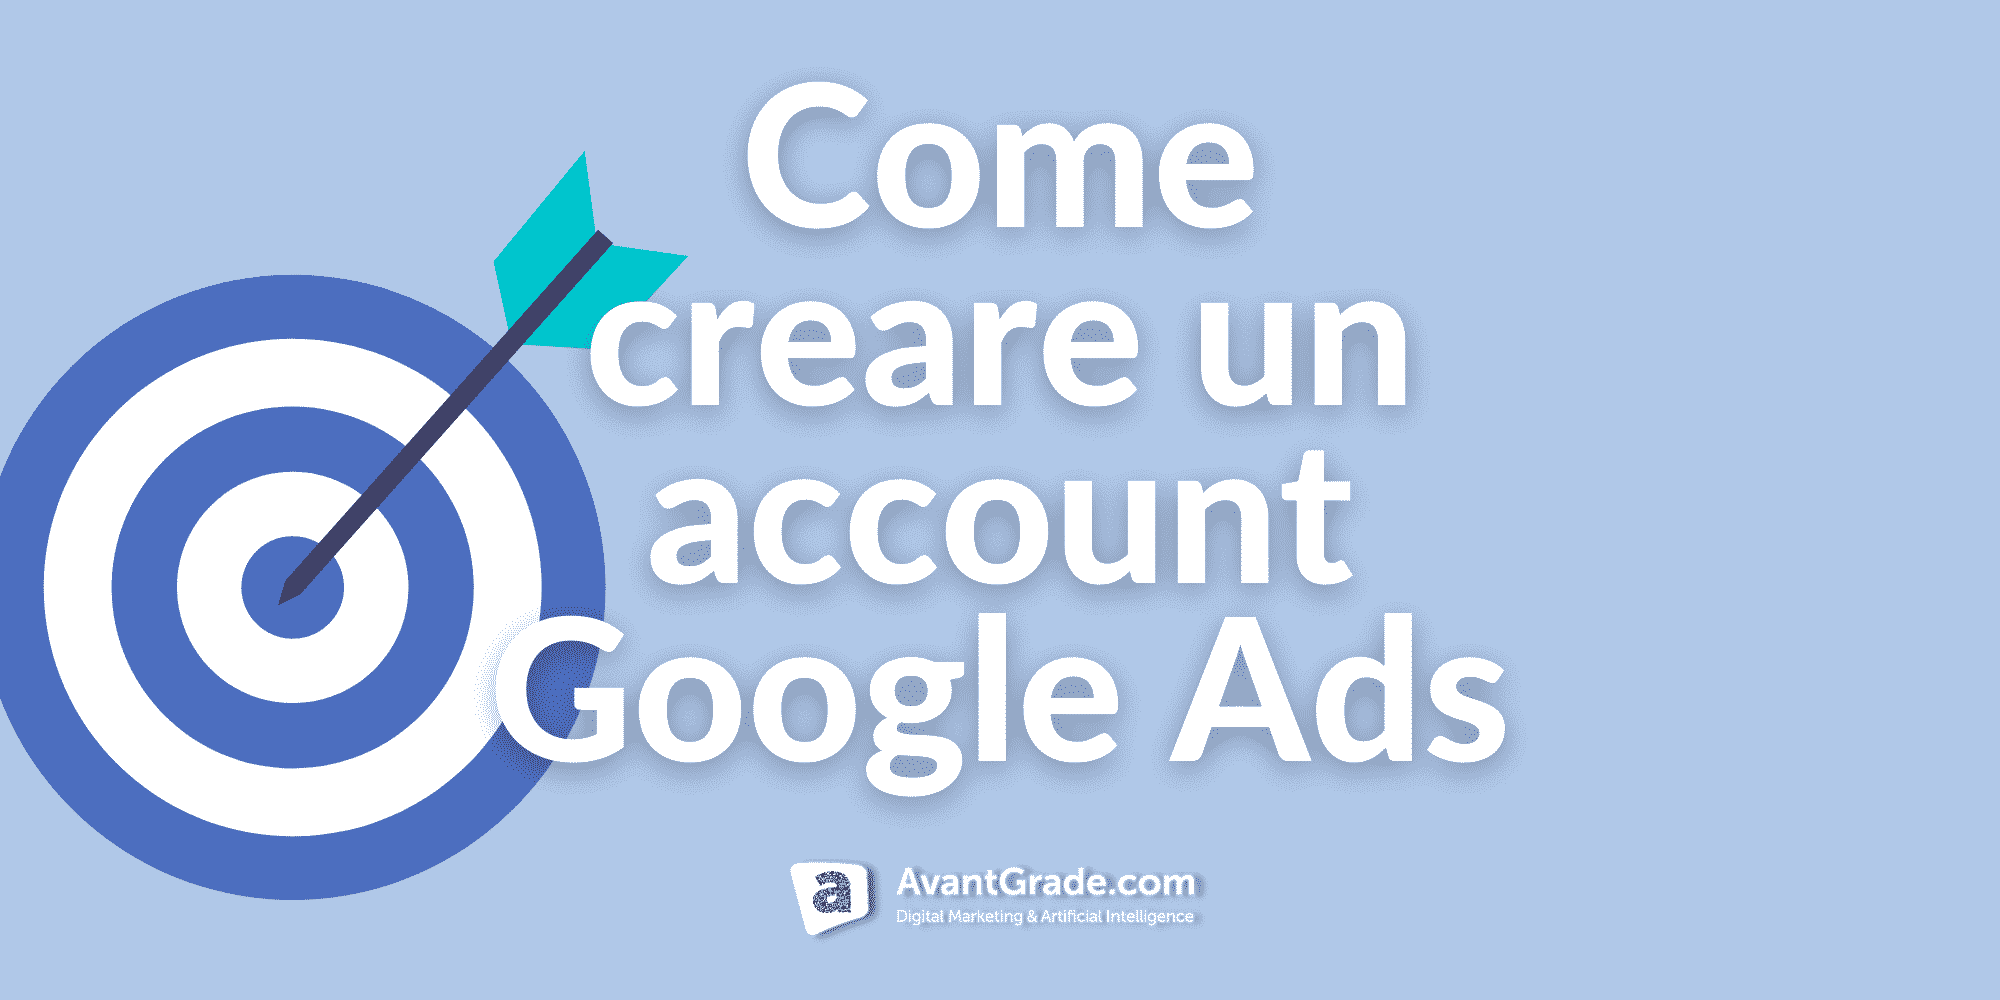 Come creare un account Google Ads?